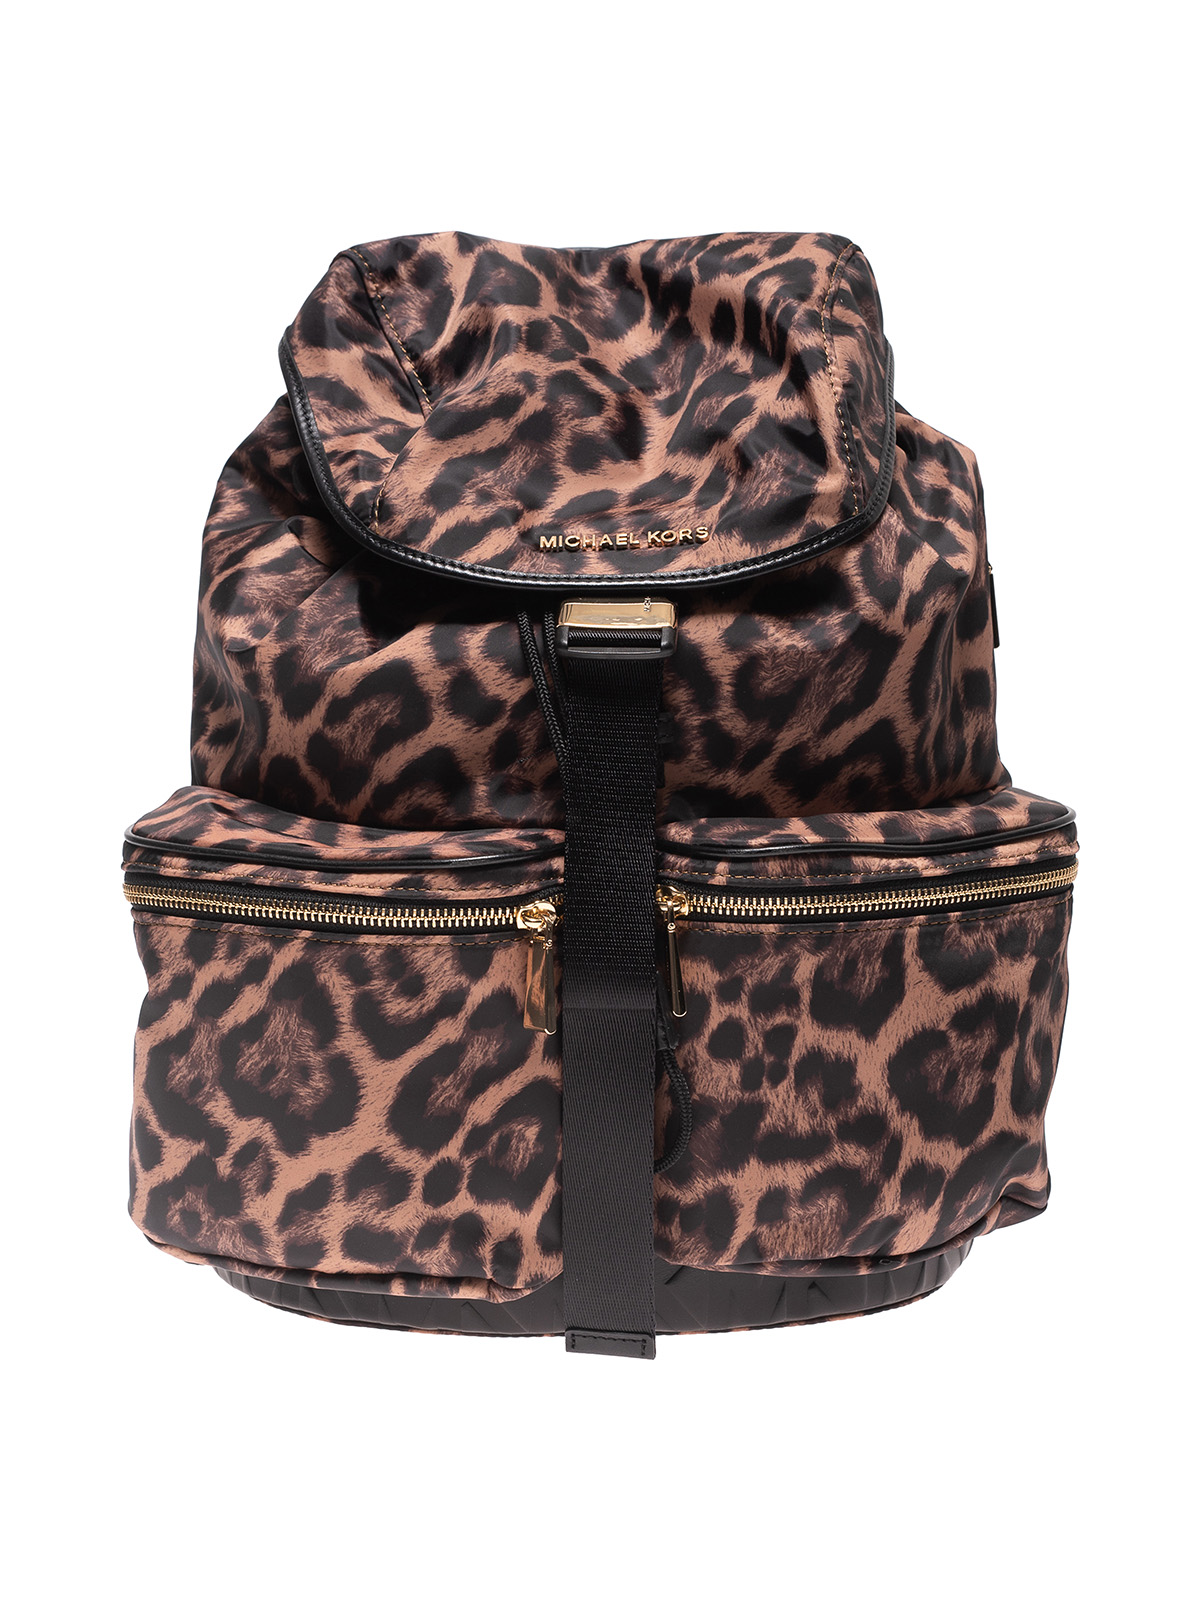 Michael Kors Large Leather Travel School Backpack Shoulder Handbag Bag  Black Mk  eBay